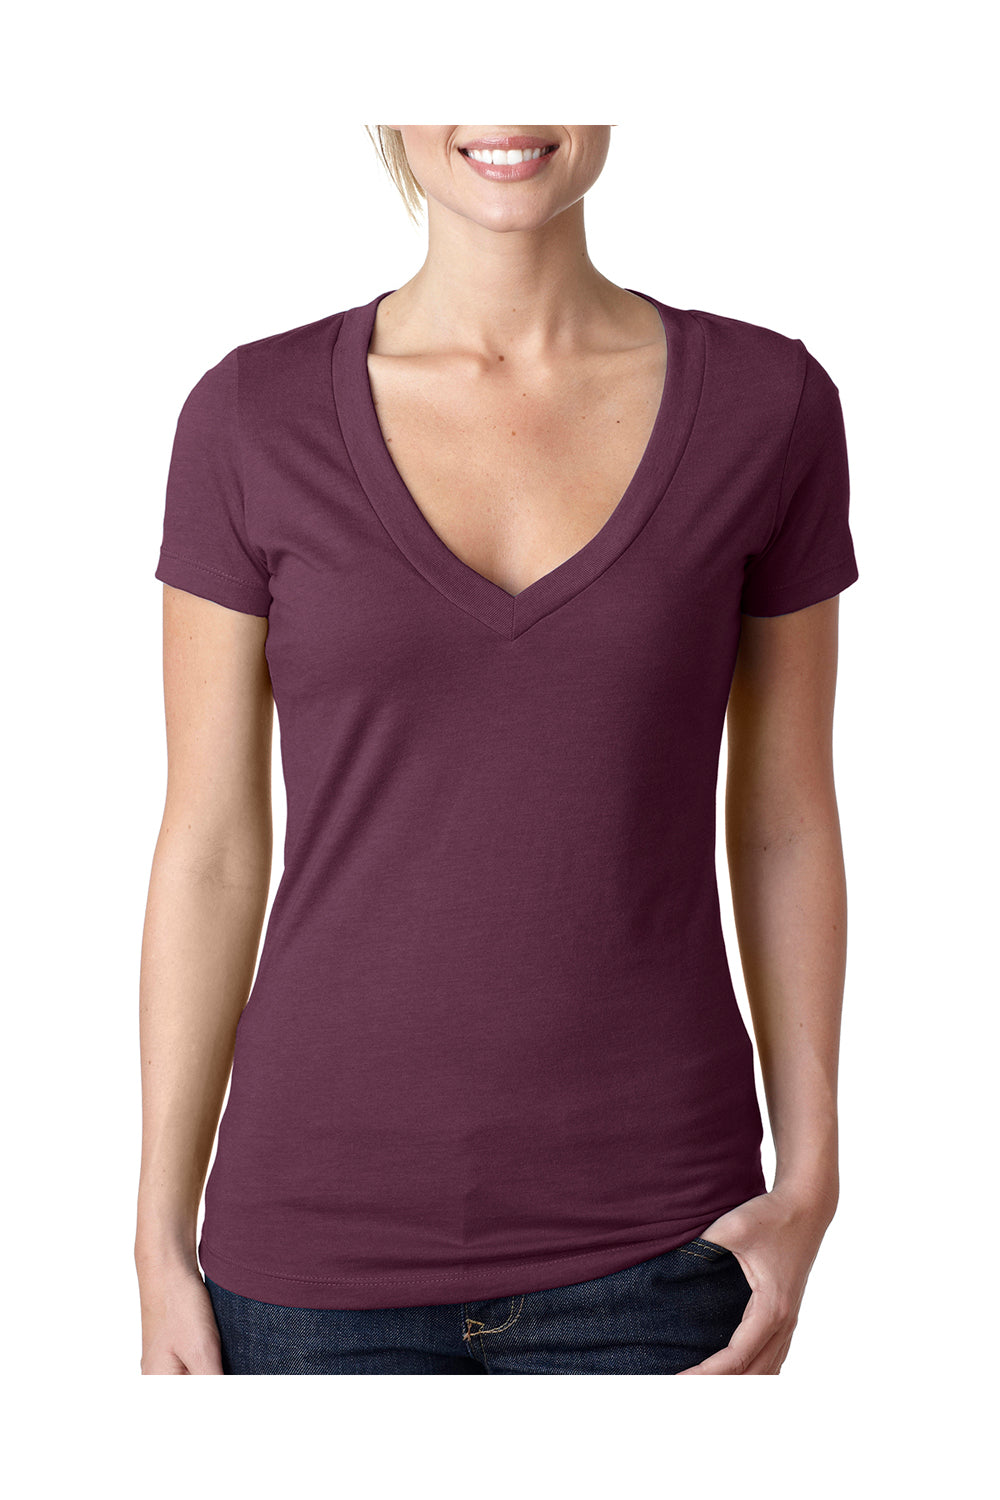 Next Level 6640 Womens CVC Jersey Short Sleeve V-Neck T-Shirt Plum Purple Front